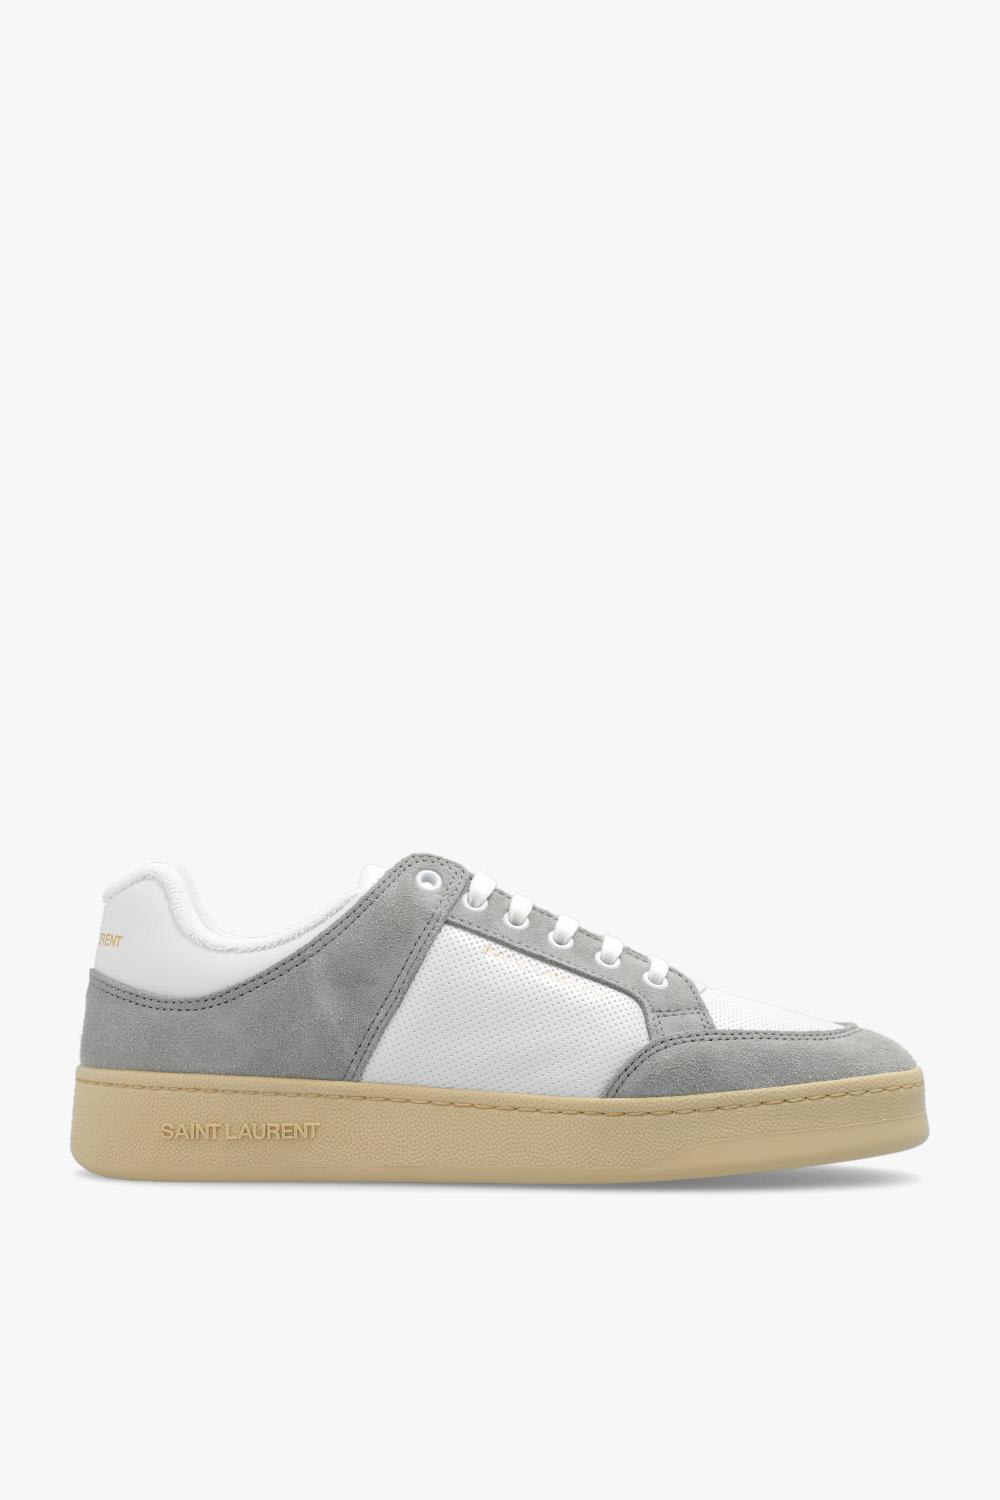 Saint Laurent Sl/61 Sneakers In Gray